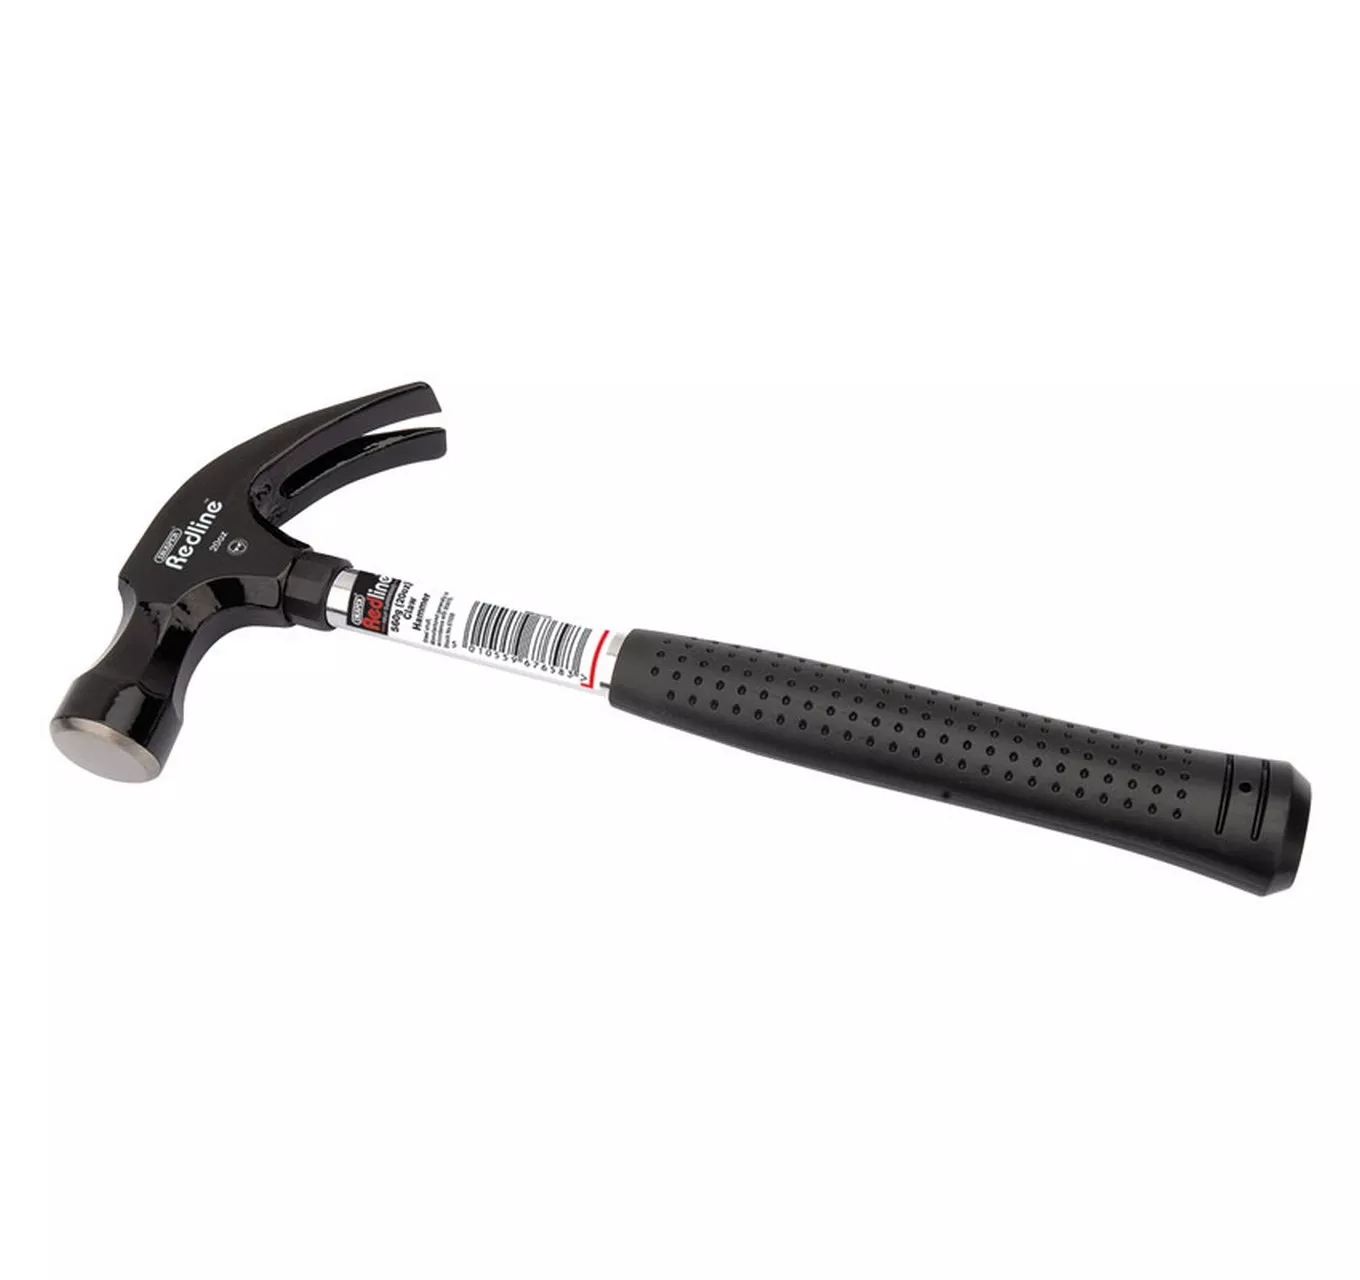 Redline Claw Hammer 560g